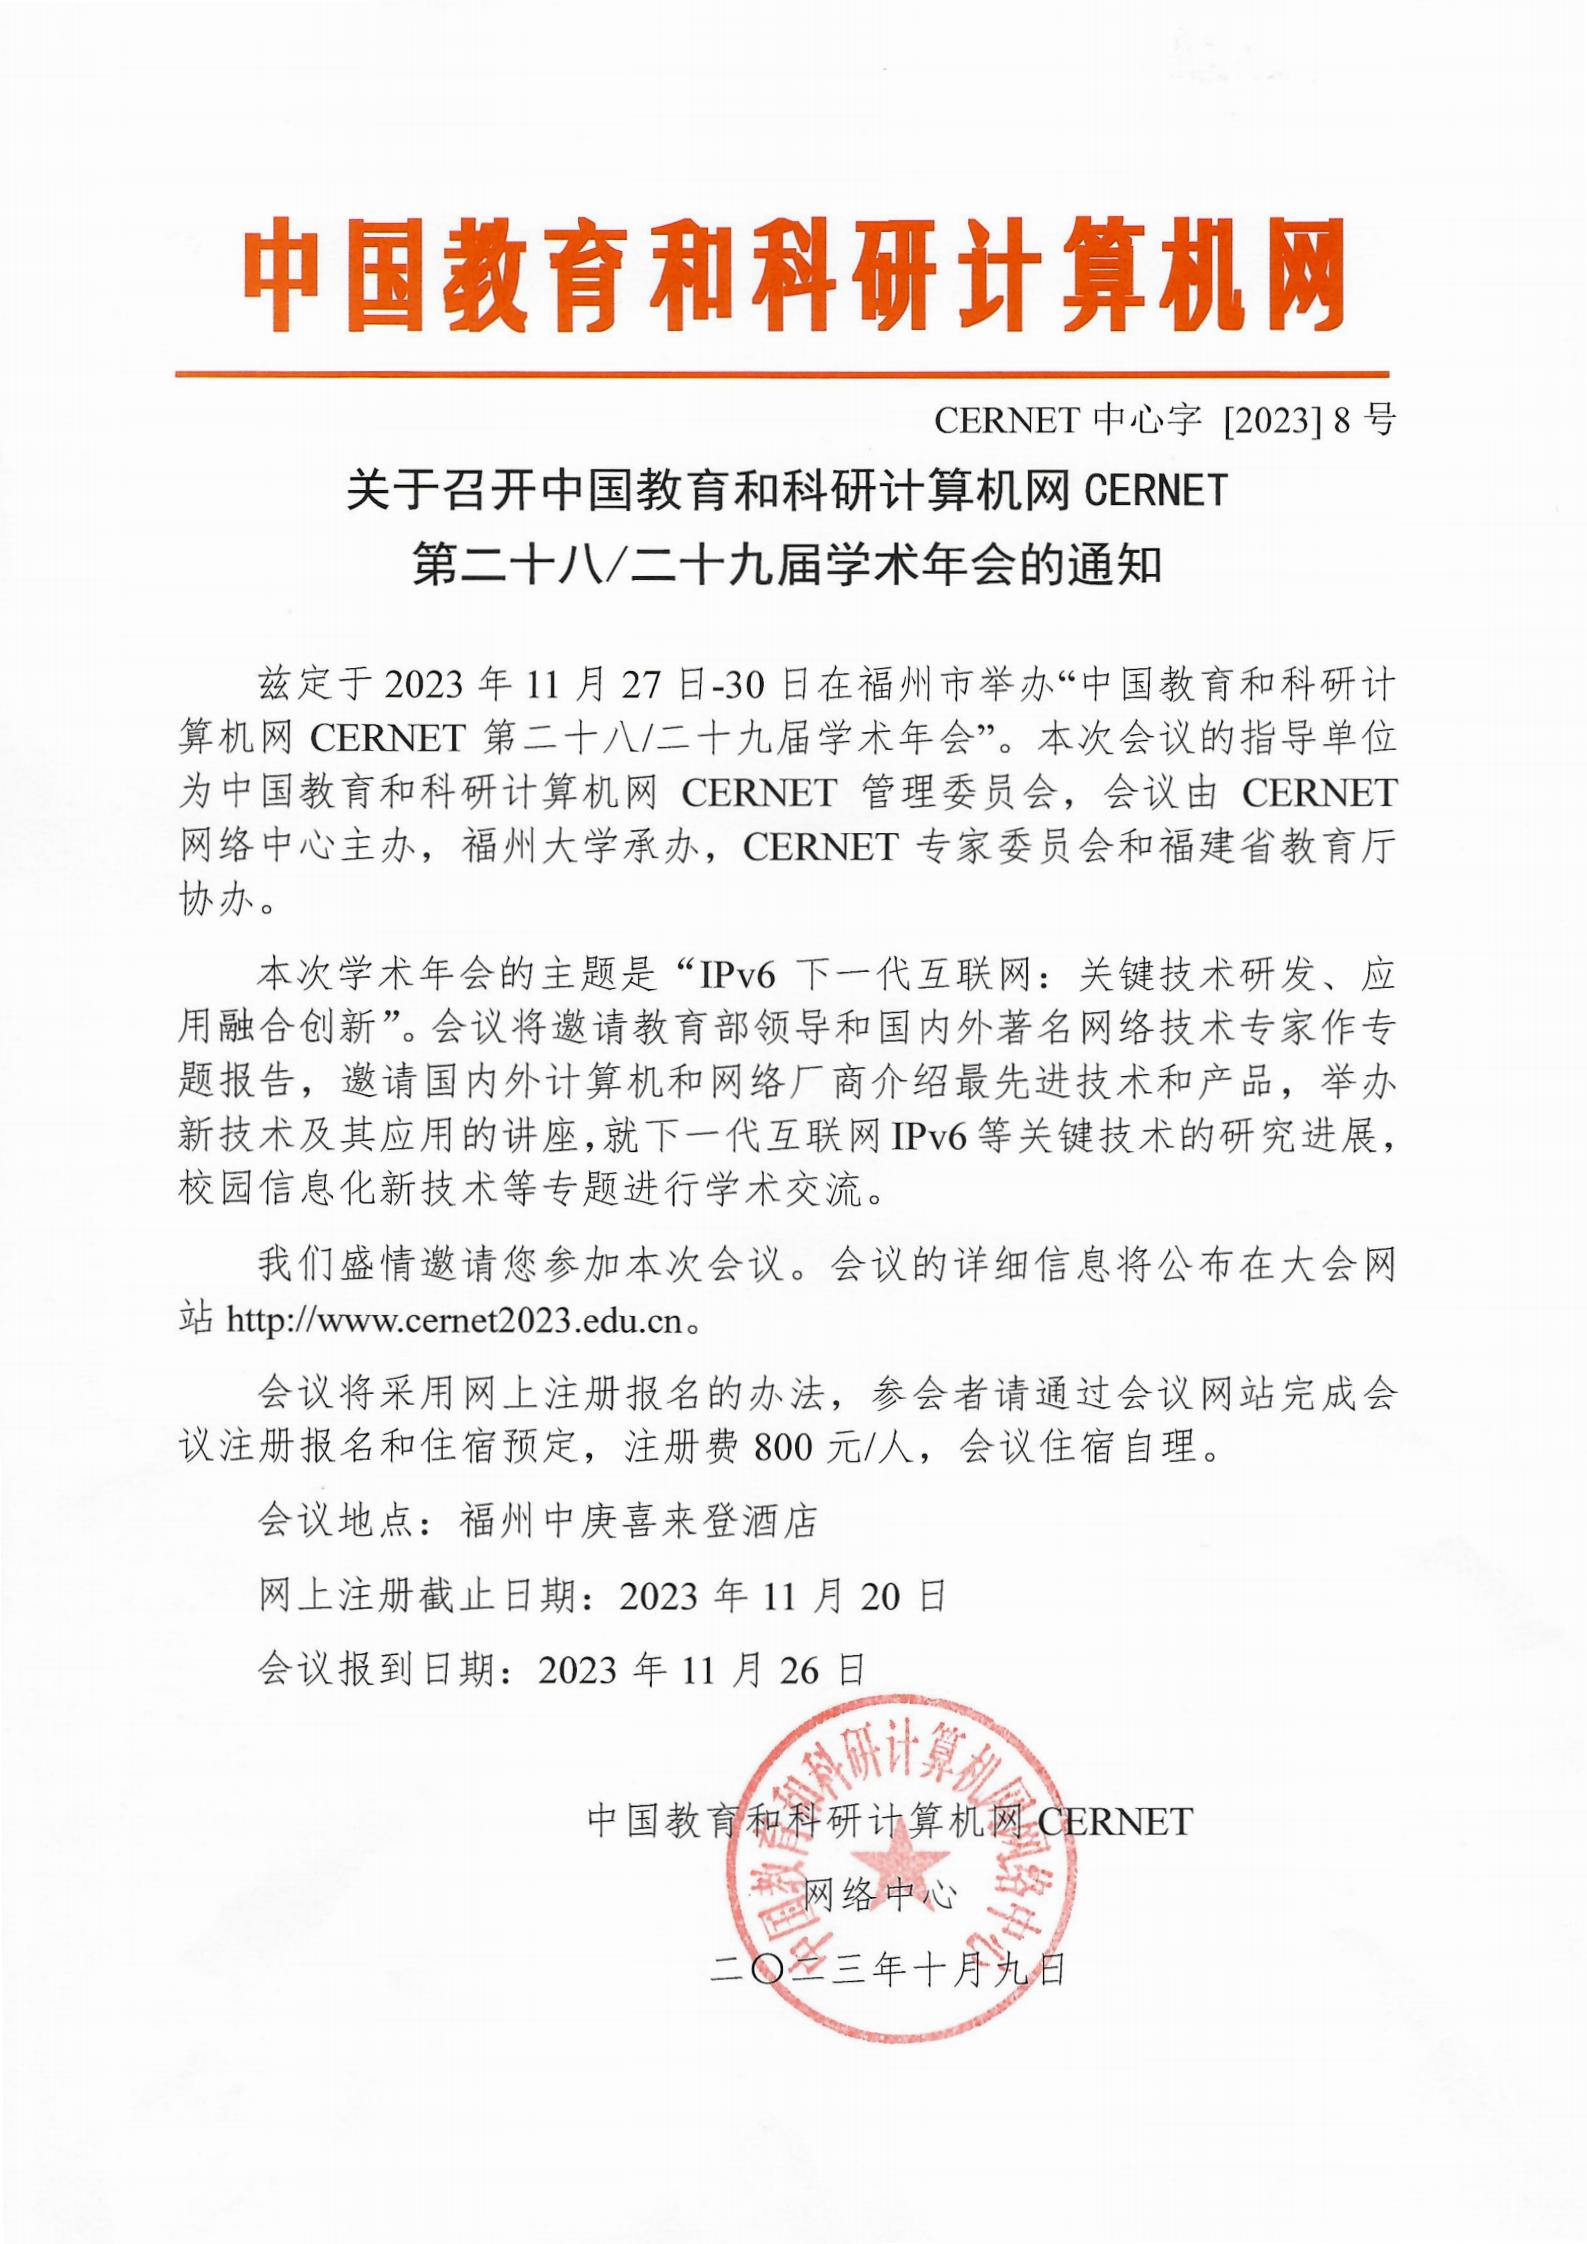 关于召开中国教育和科研计算机网CERNET第二十八、二十九届学术年会的通知_00.jpg